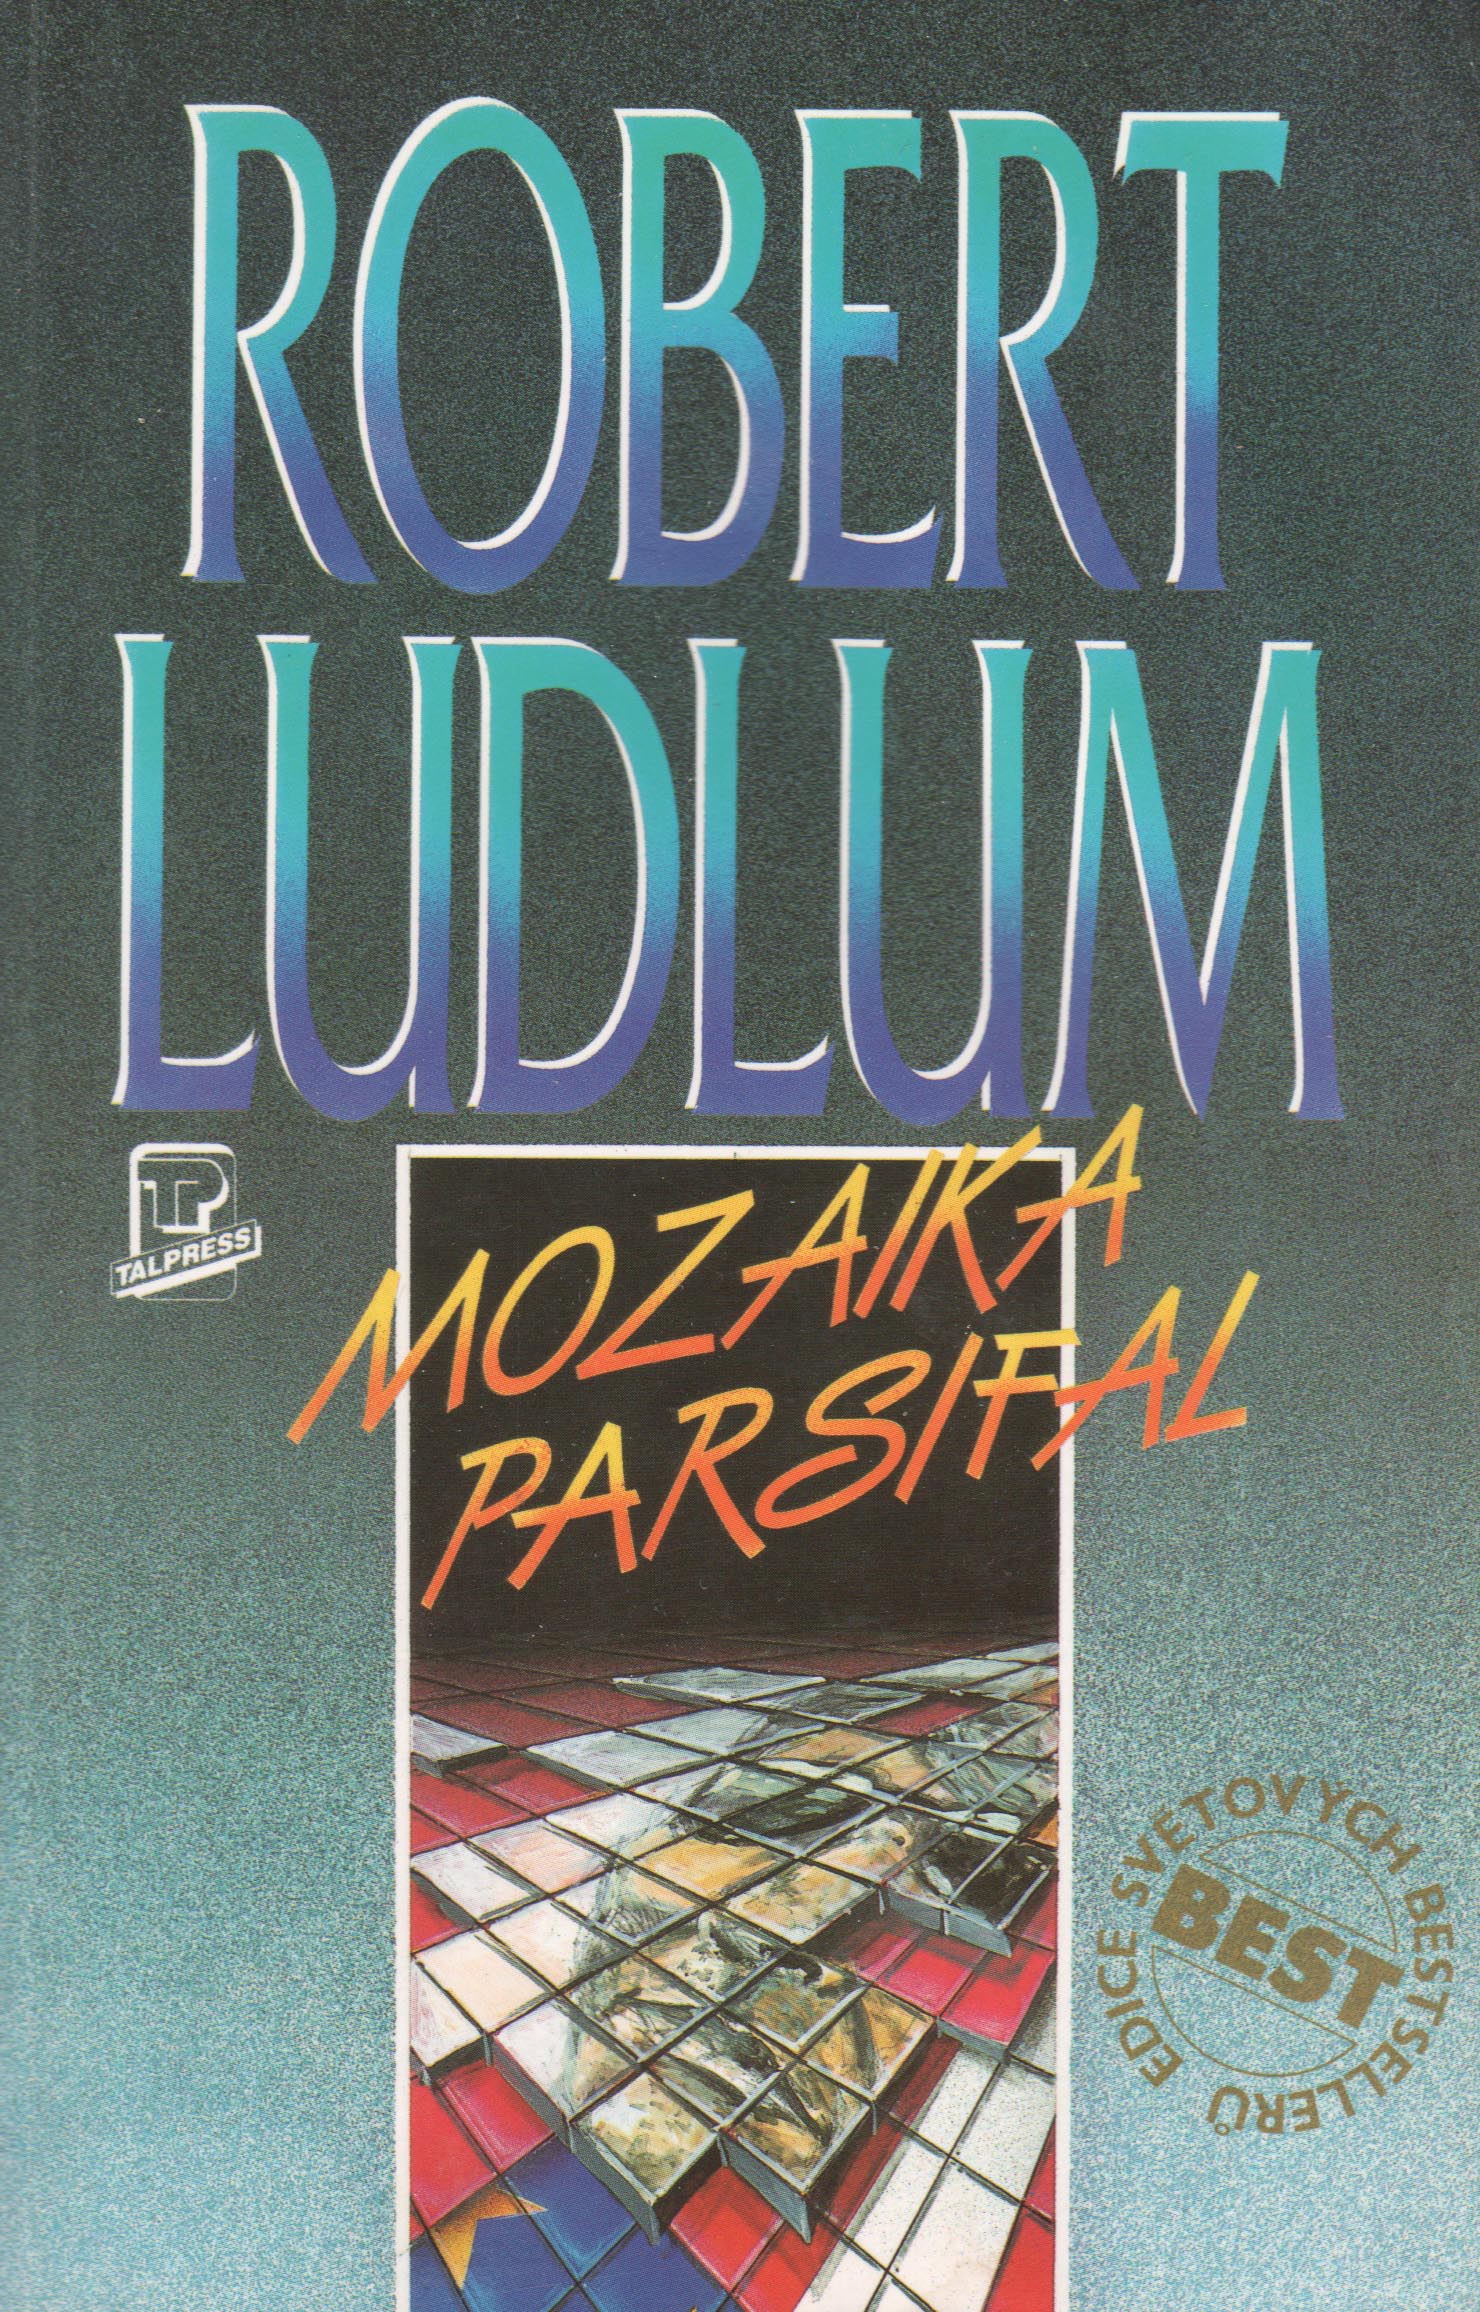 Mozaika Parsifal (Robert Ludlum)